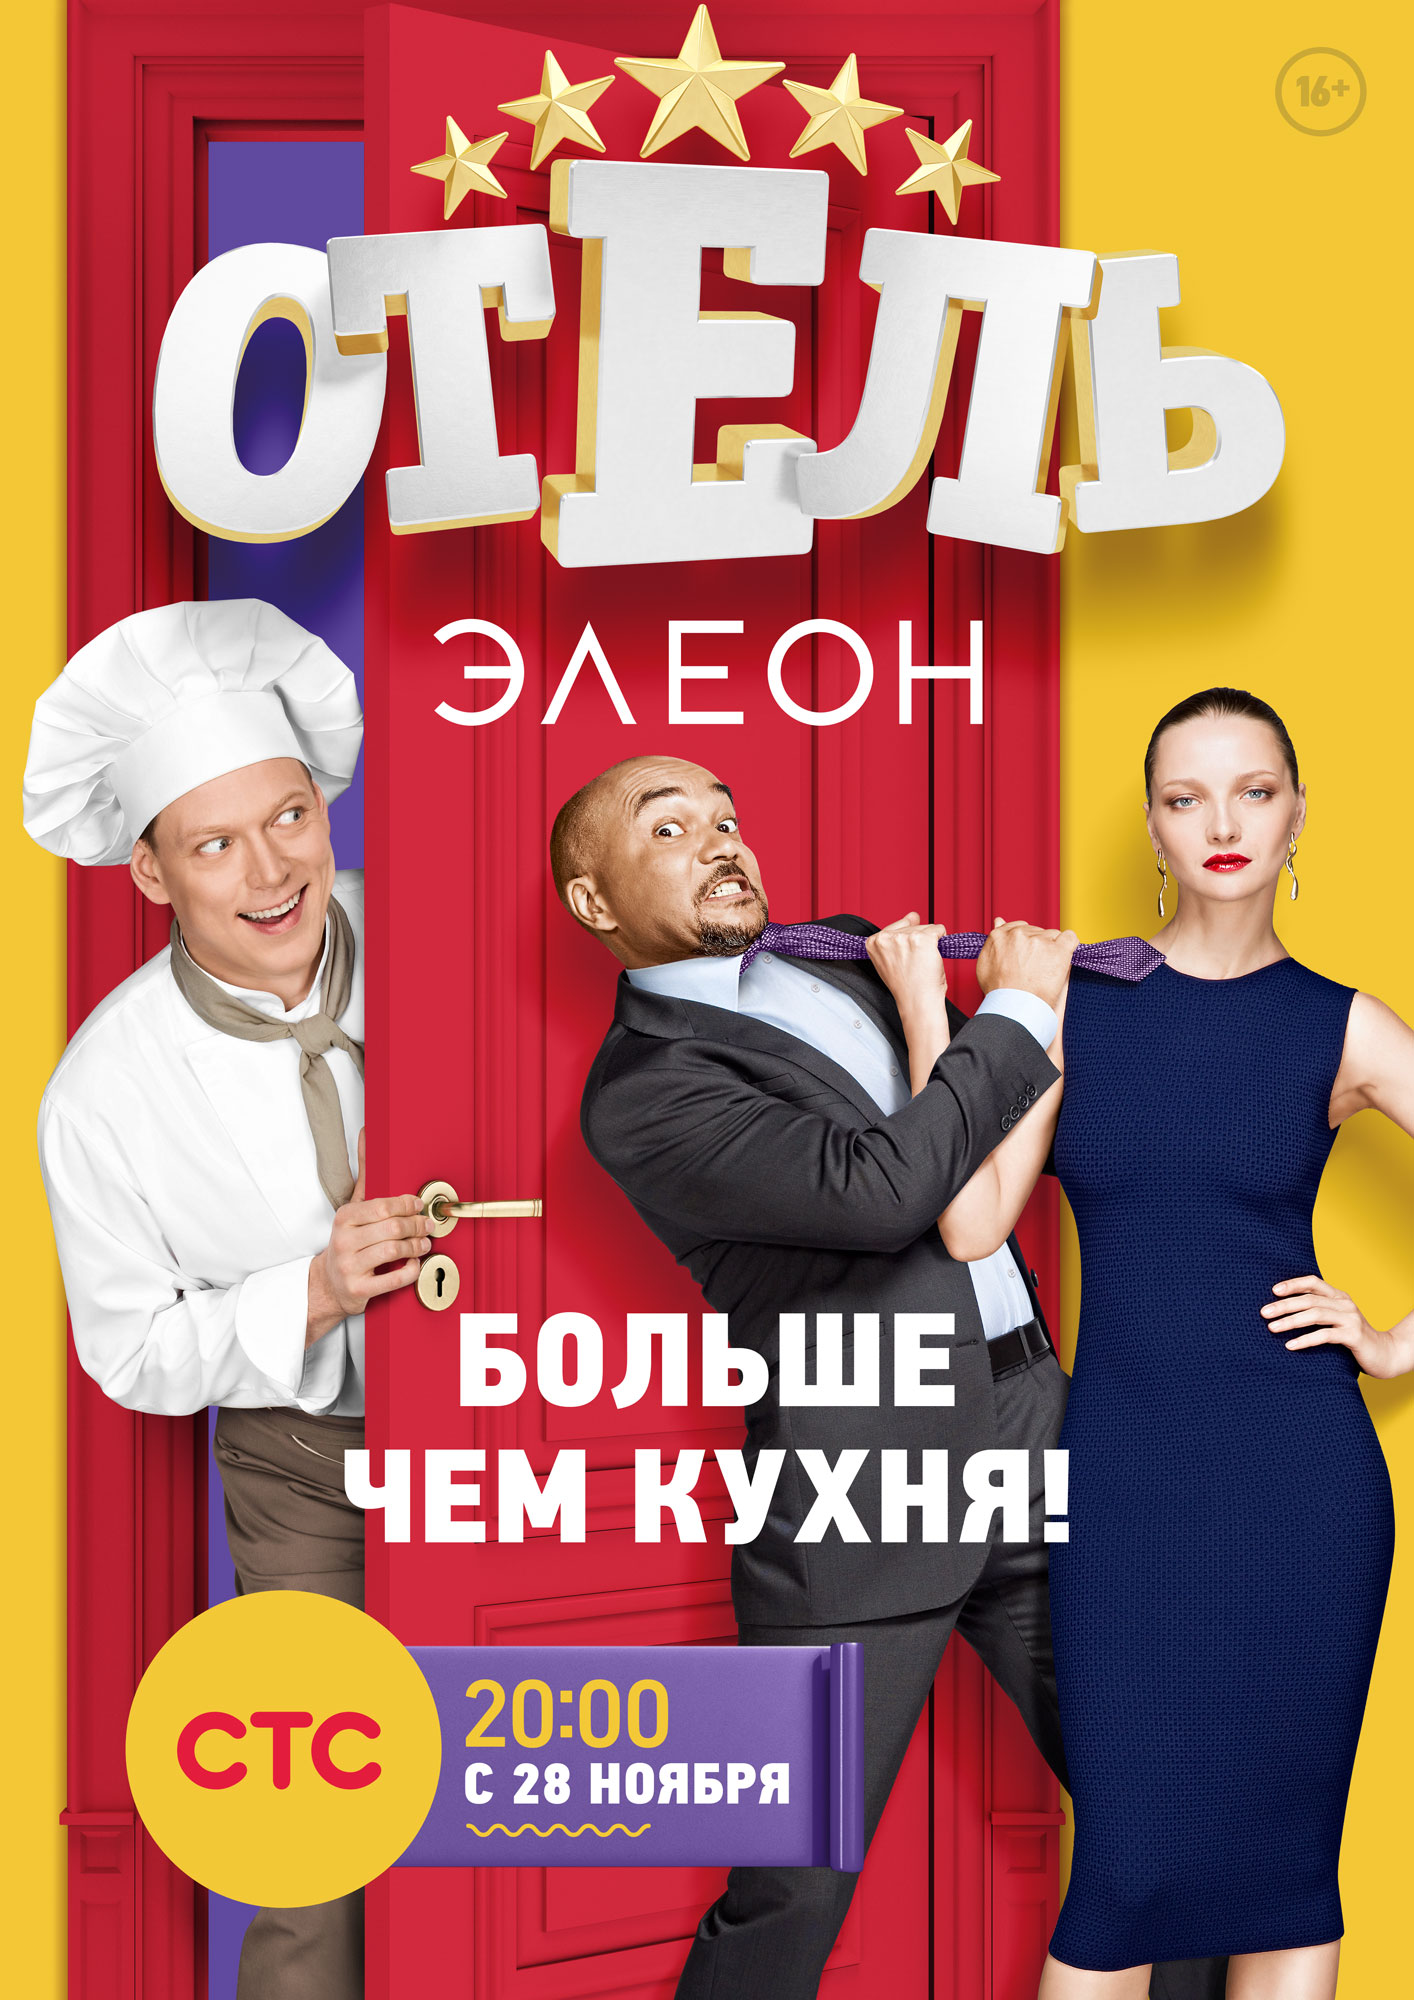 Отель Элеон 2016 2017 Постеры Фильм ру